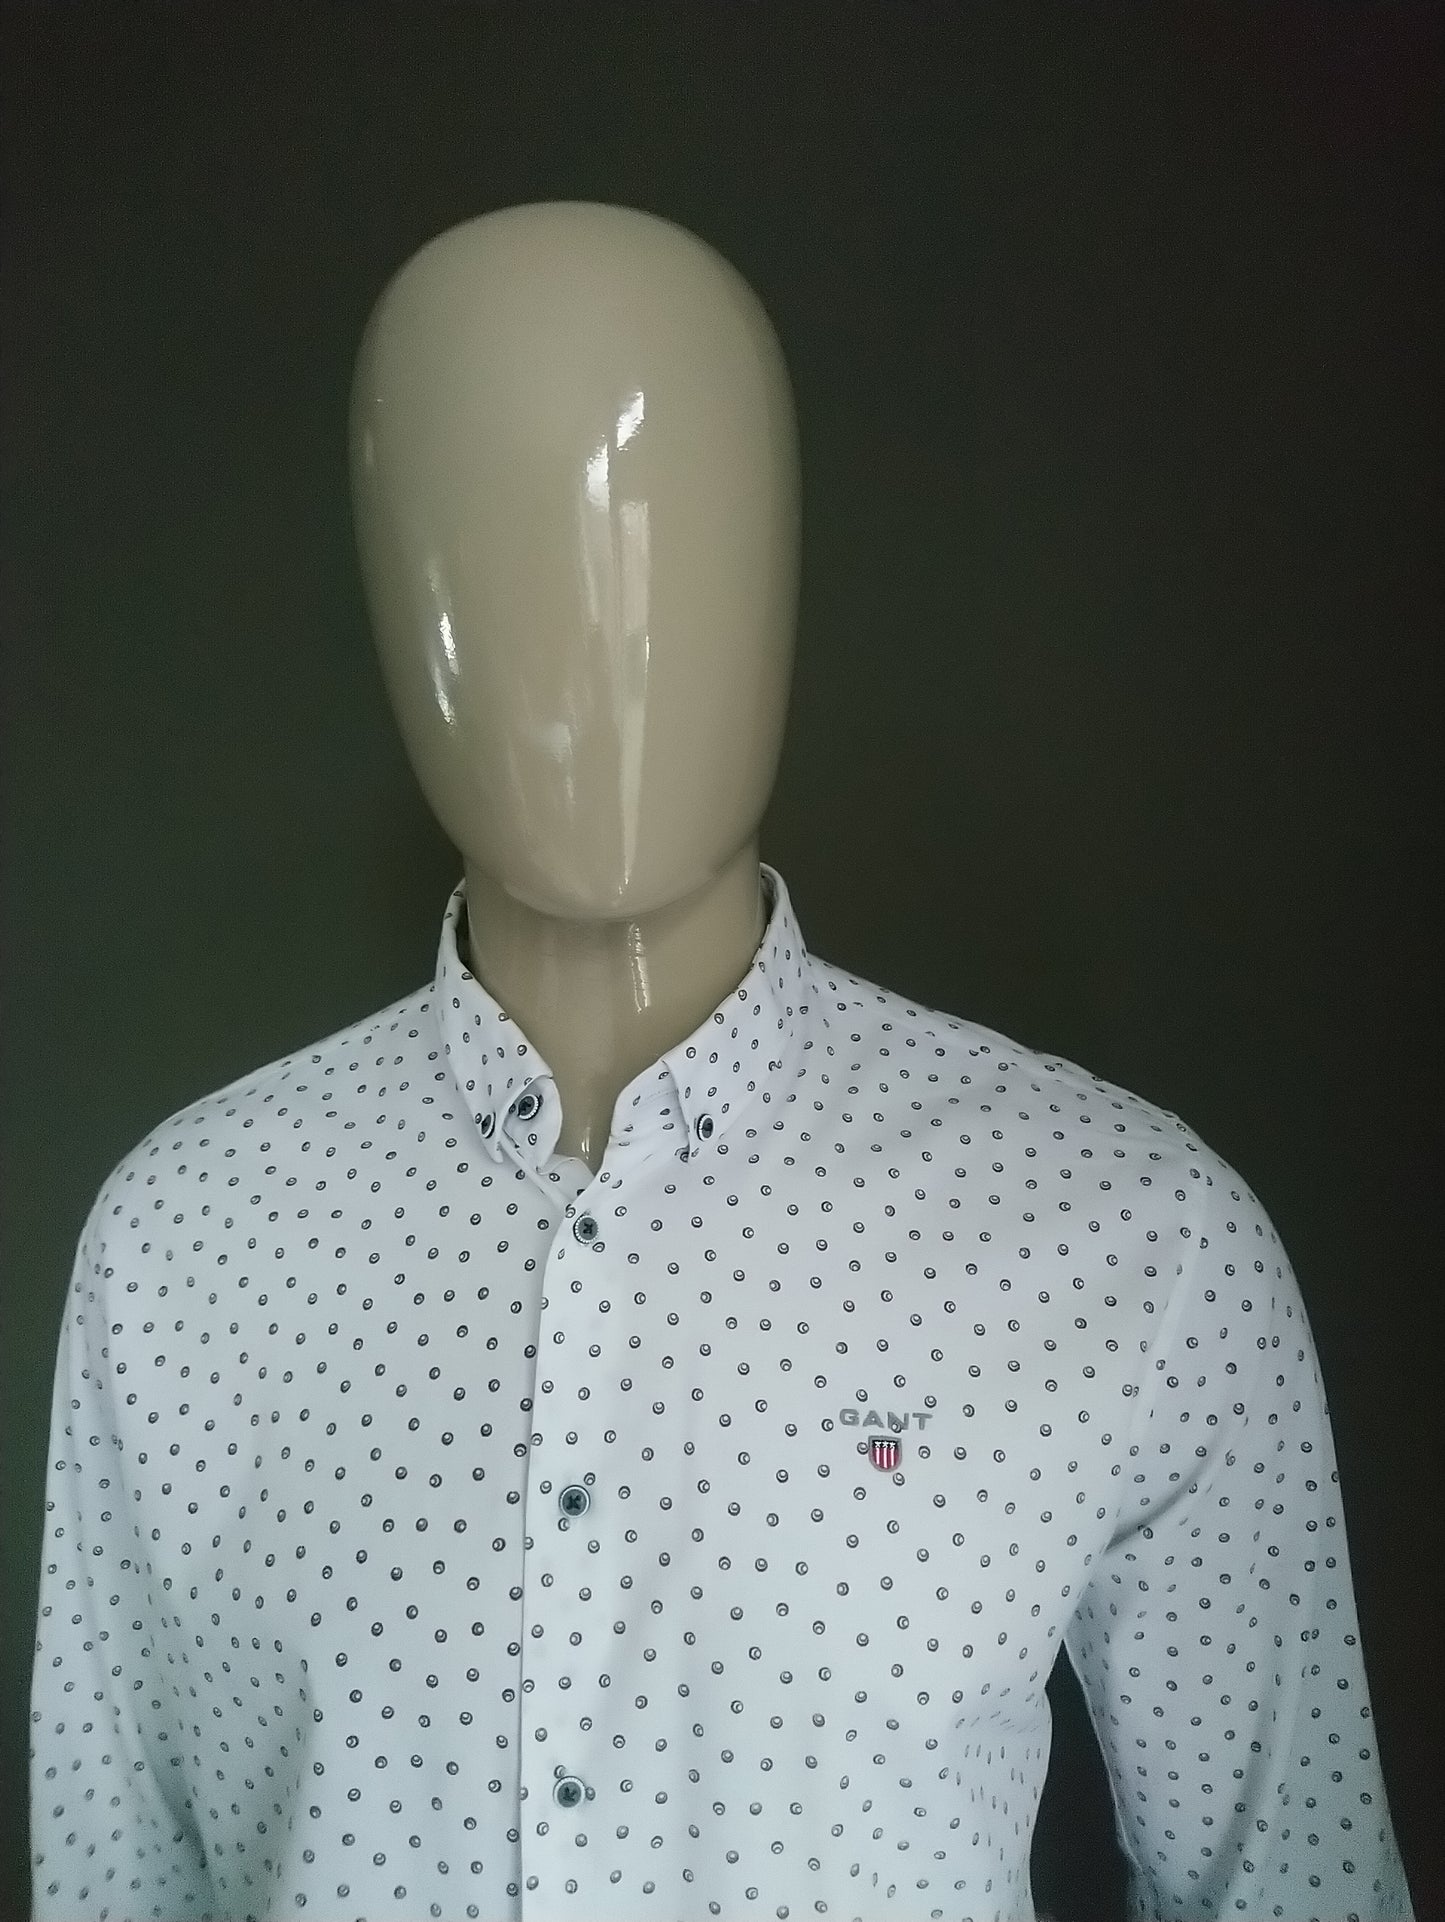 Gant shirt. Red white blue motif. Size L / XL. Falls narrow